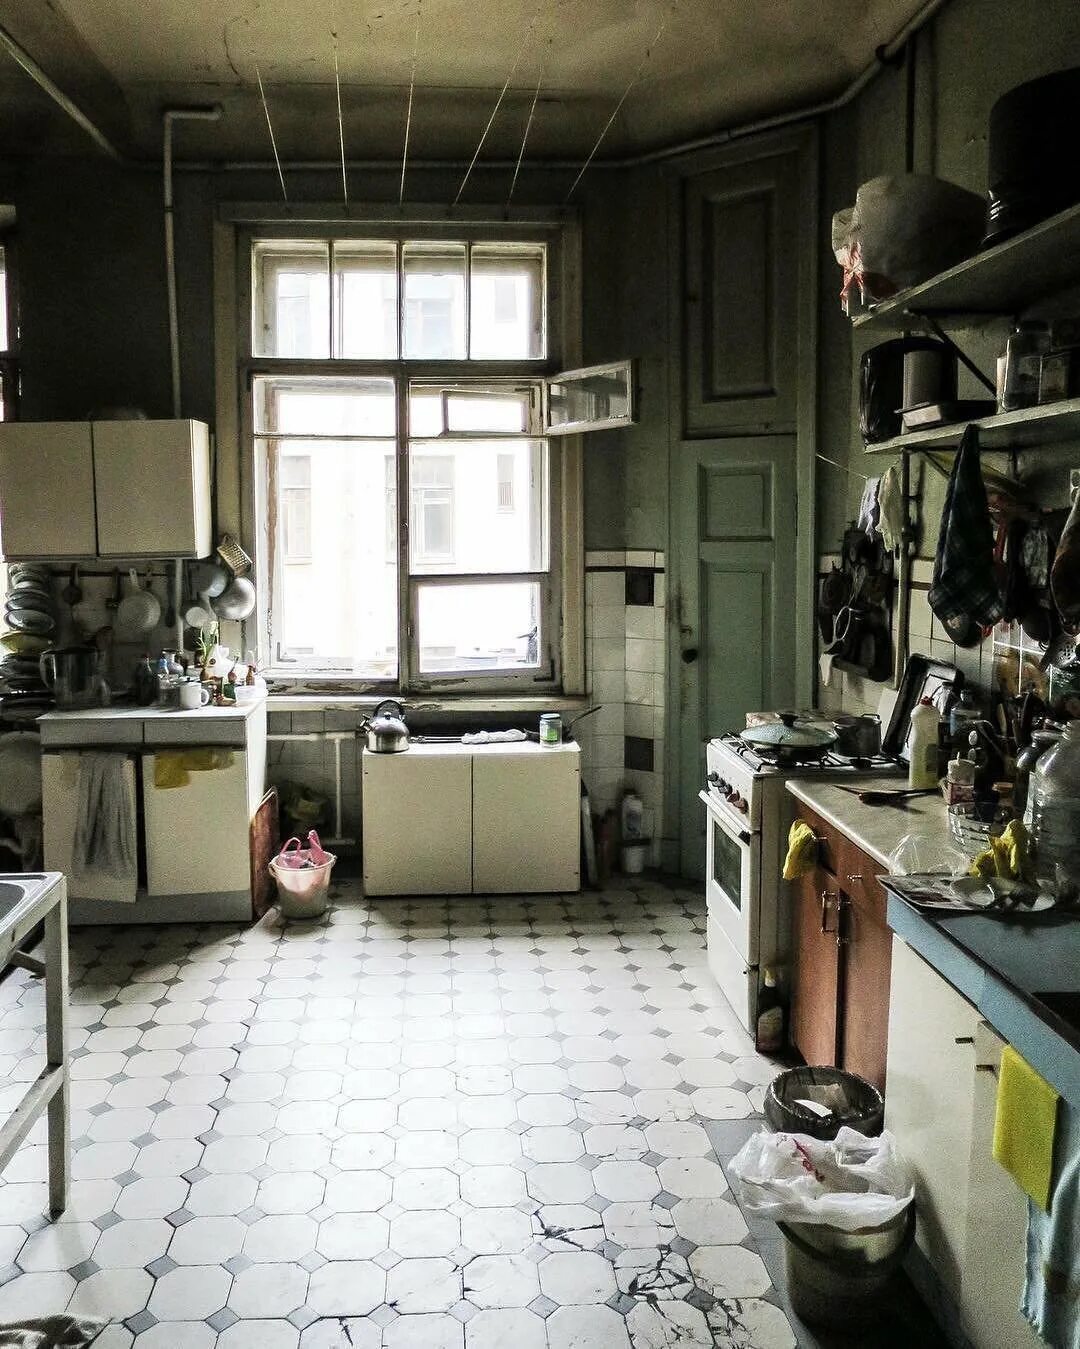 Коммуналка продажа. Кухня в коммуналке. Кухня в старой квартире. Кухня коммуналки интерьер. Советская кухня.